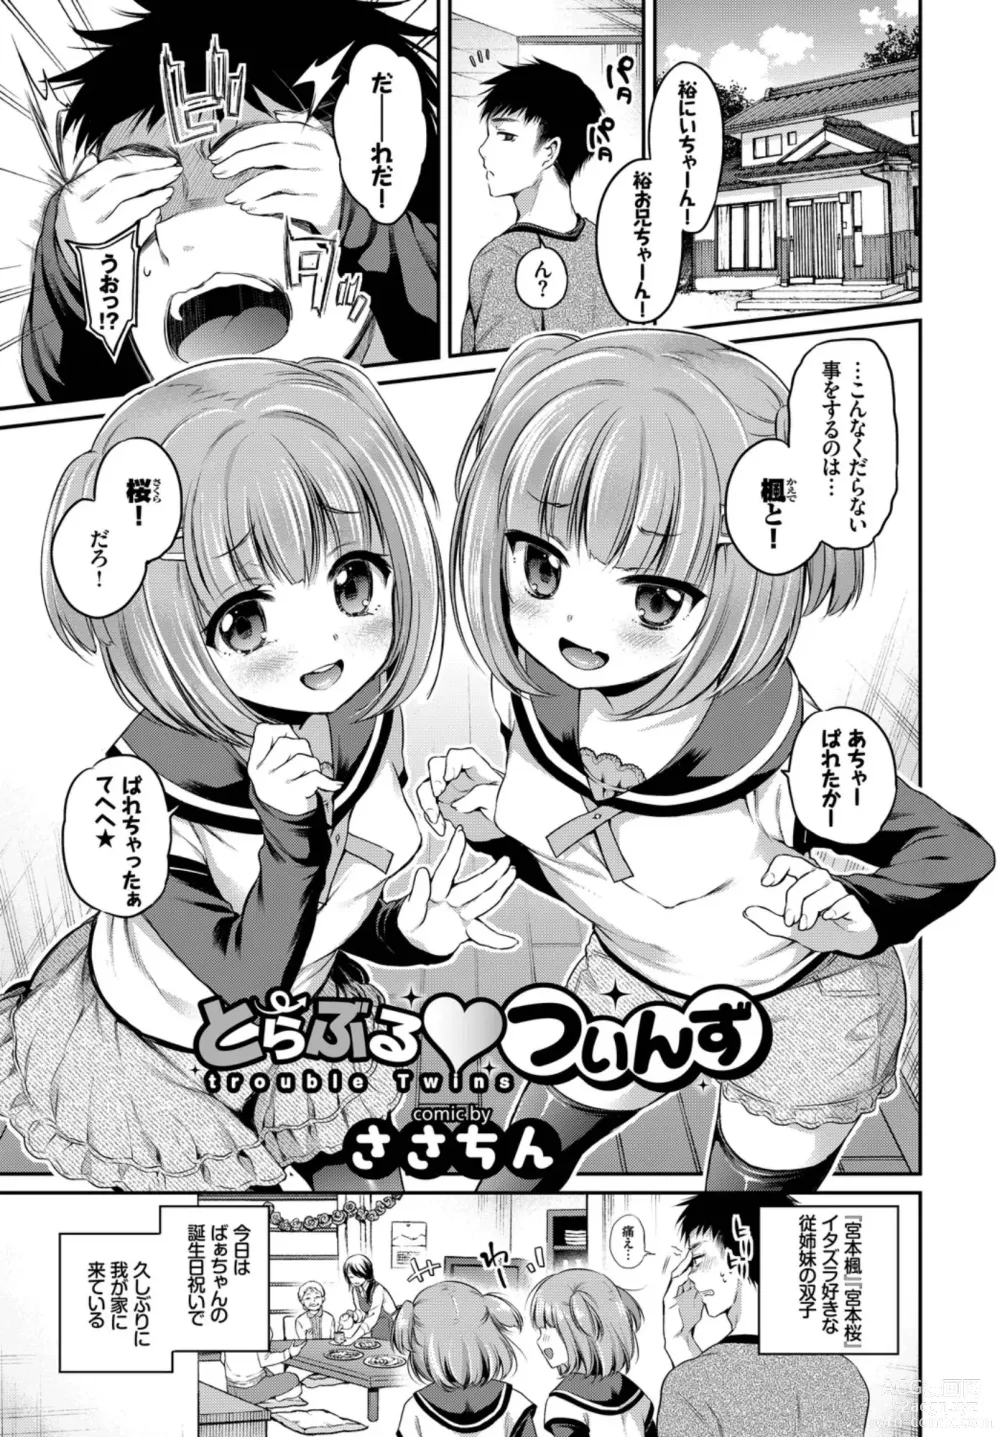 Page 3 of manga Oppai Sand de Shouten Shichao VOL. 2 ~Futago Hen~